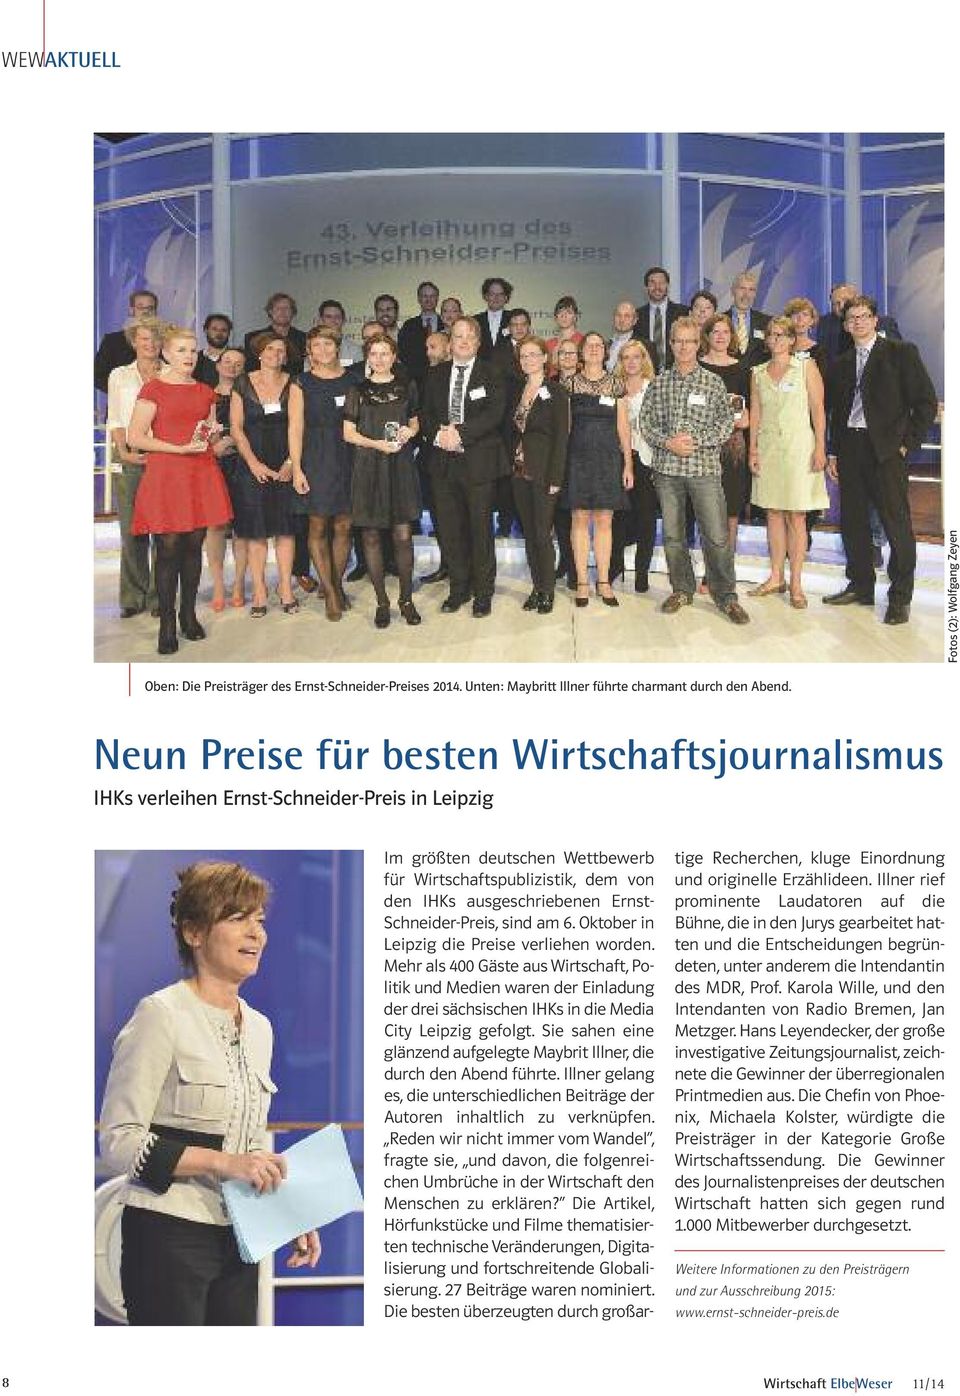 Schneider-Preis, sind am 6. Oktober in Leipzig die Preise verliehen worden.